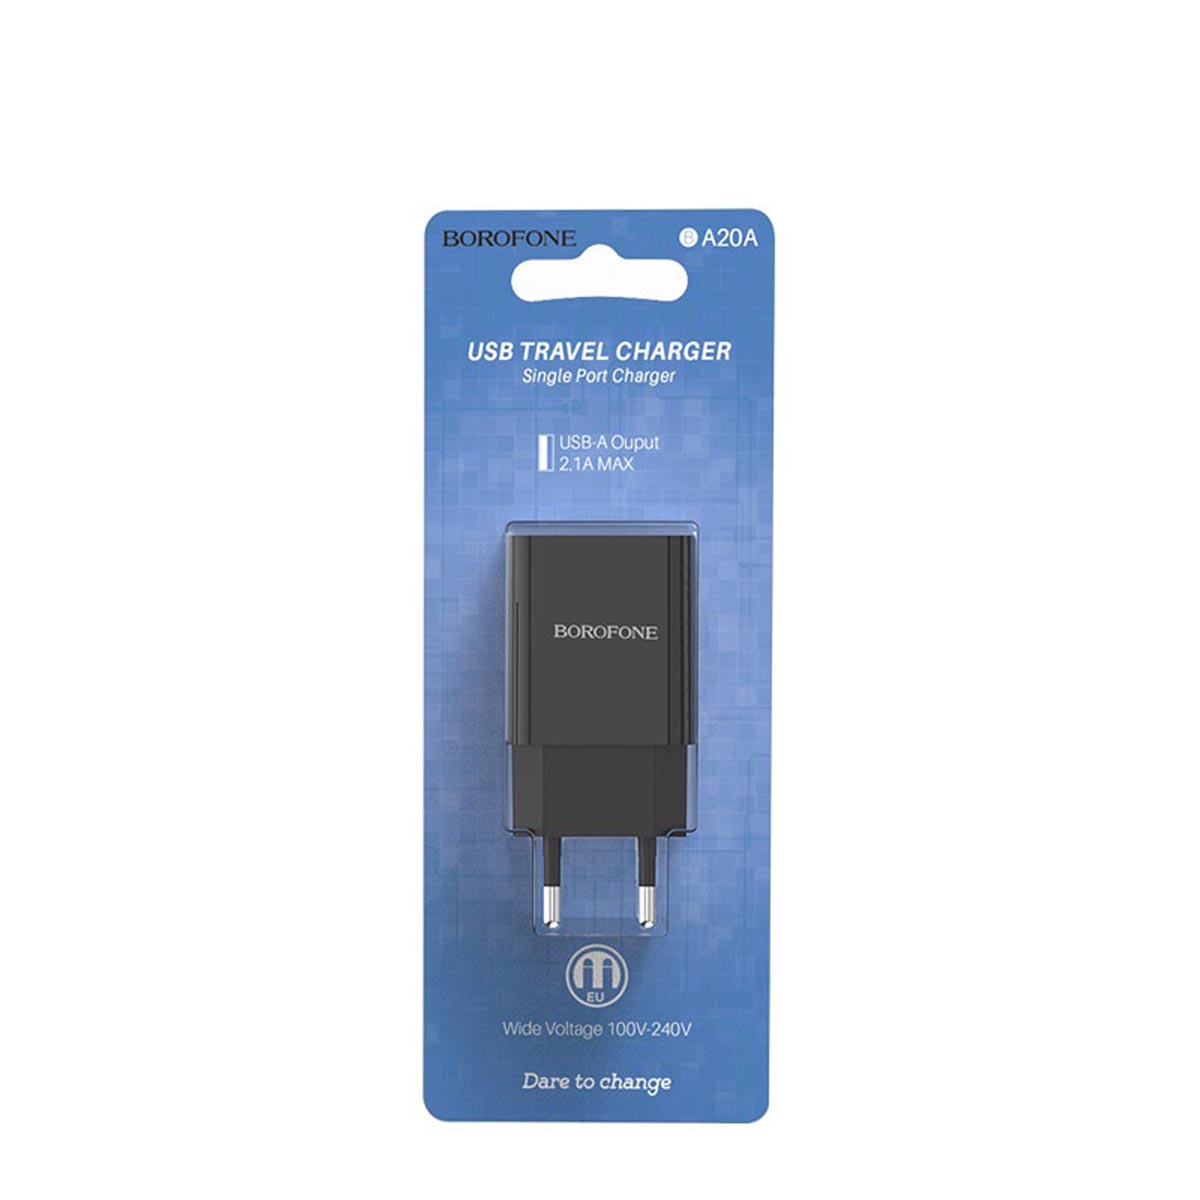 СЗУ (Cетевое зарядное устройство) BOROFONE BA20A Sharp, 2.1А, 1 USB, цвет черный